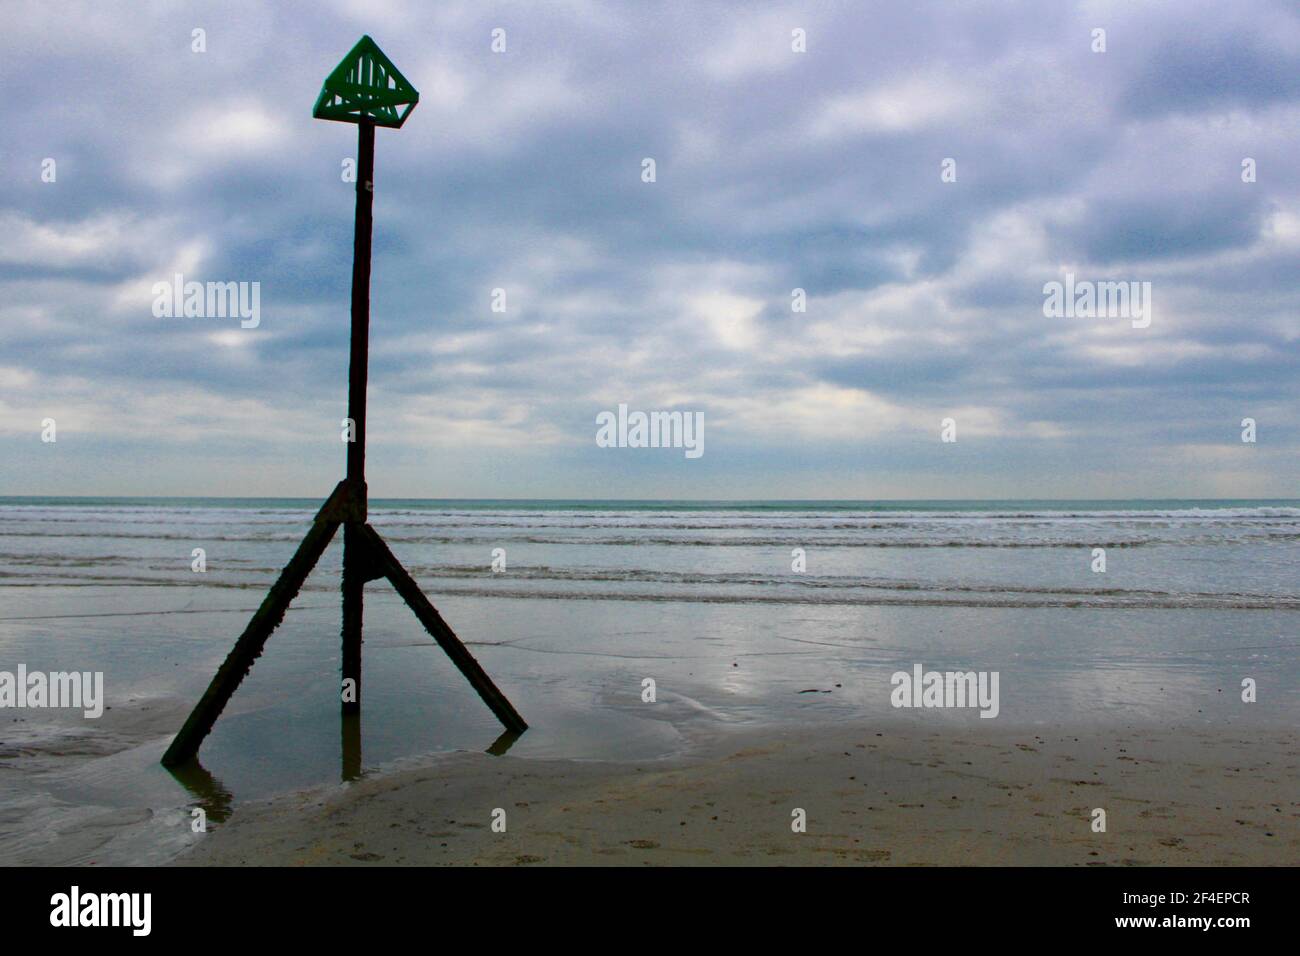 Stimmungsvolles Bild eines Strandmarkers am Strand von West Wittering in West Sussex, England. Foto, das während der Sperrung Großbritanniens aufgenommen wurde. Stockfoto